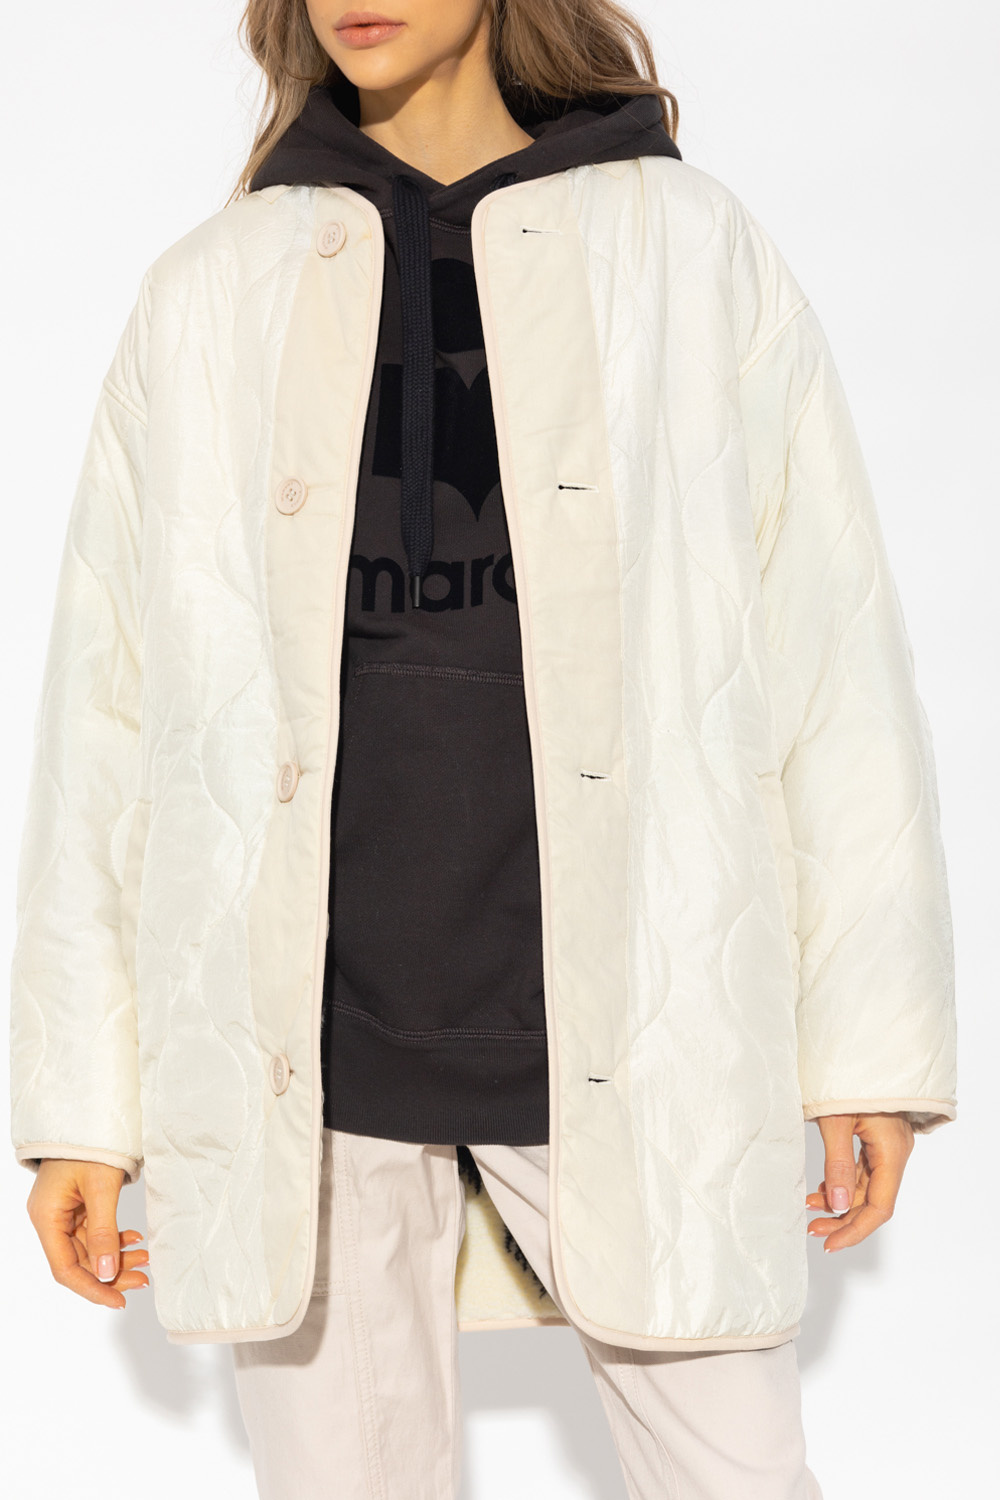 hemel intern Seizoen De-iceShops Canada - 'Himemma' reversible jacket Isabel Marant Étoile -  Mens Superdry Tokyo Jacket